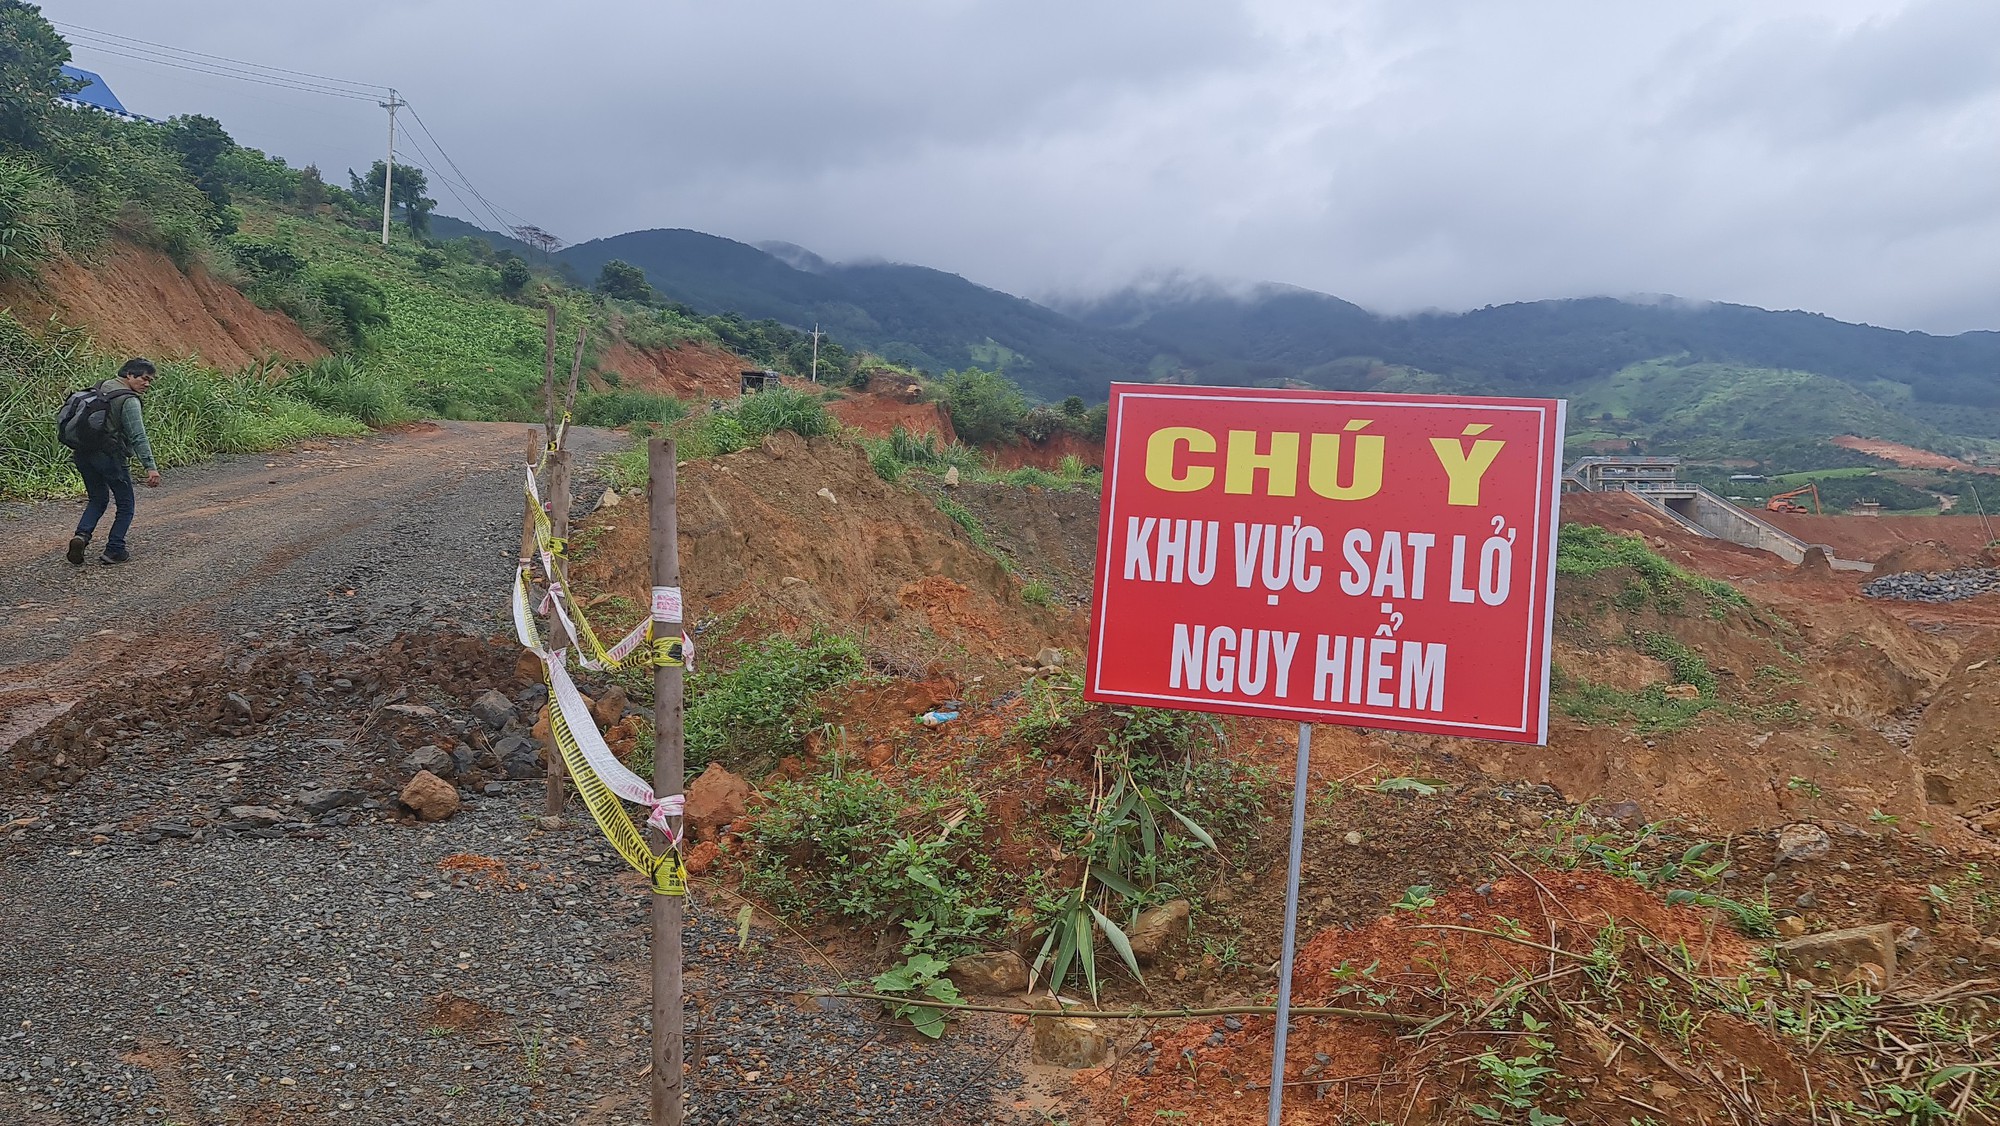 Lâm Đồng: Nhiều vết nứt vừa xuất hiện tại dự án hồ chứa nước 500 tỉ đồng - Ảnh 10.